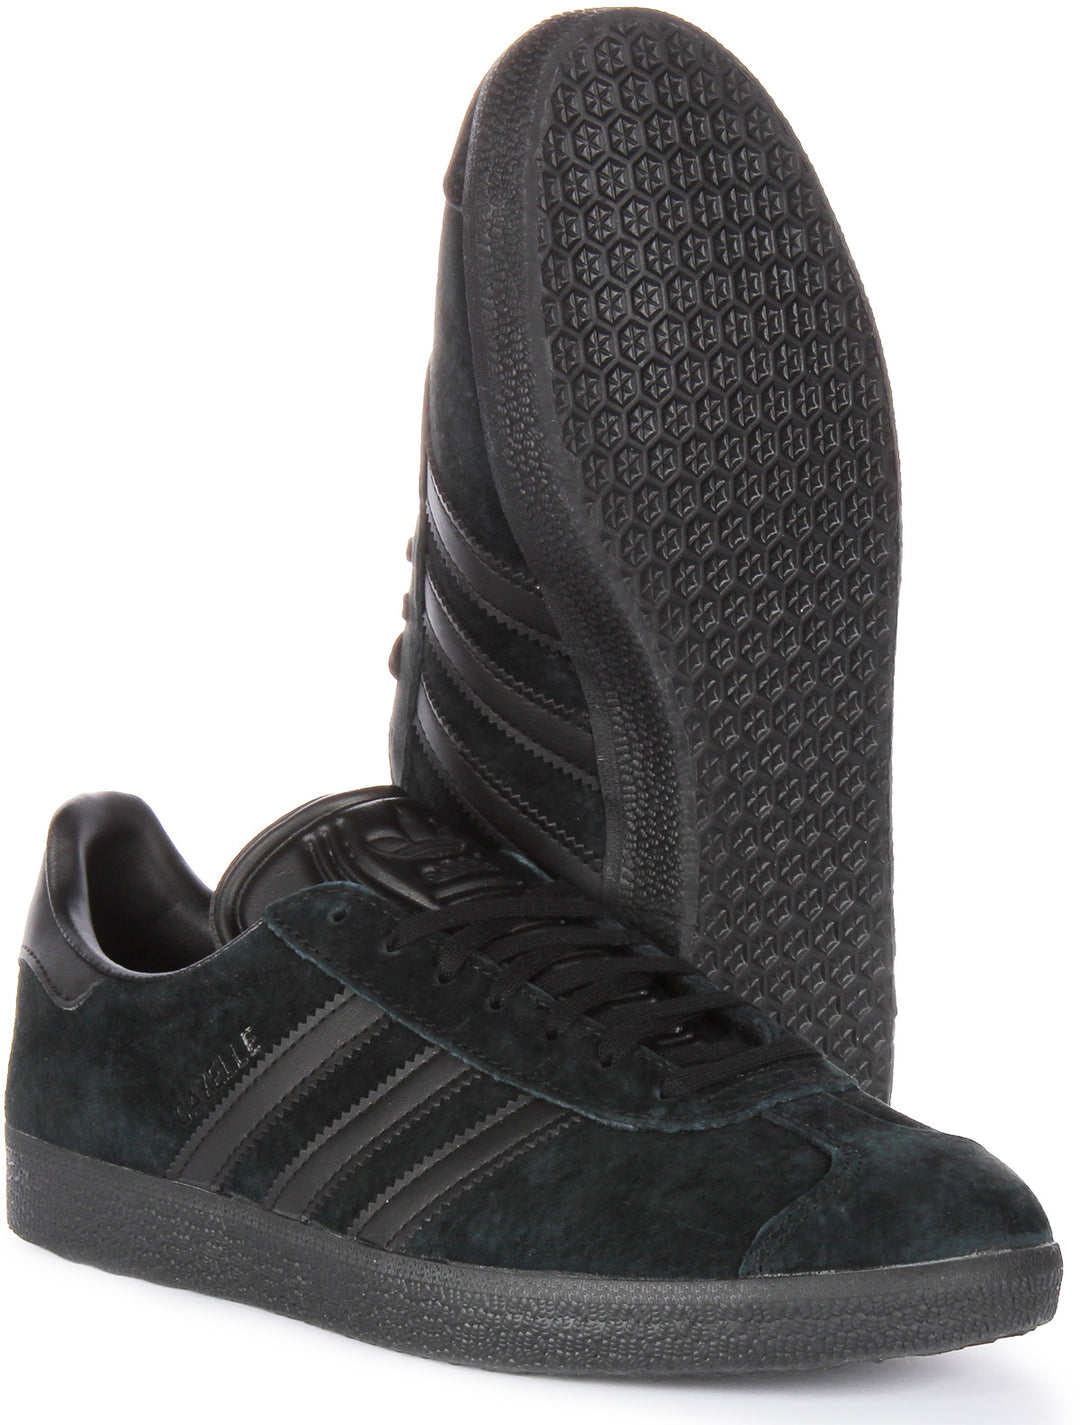 Adidas Gazelle Baskets à lacets en cuir nubuck pour hommes en tout noir